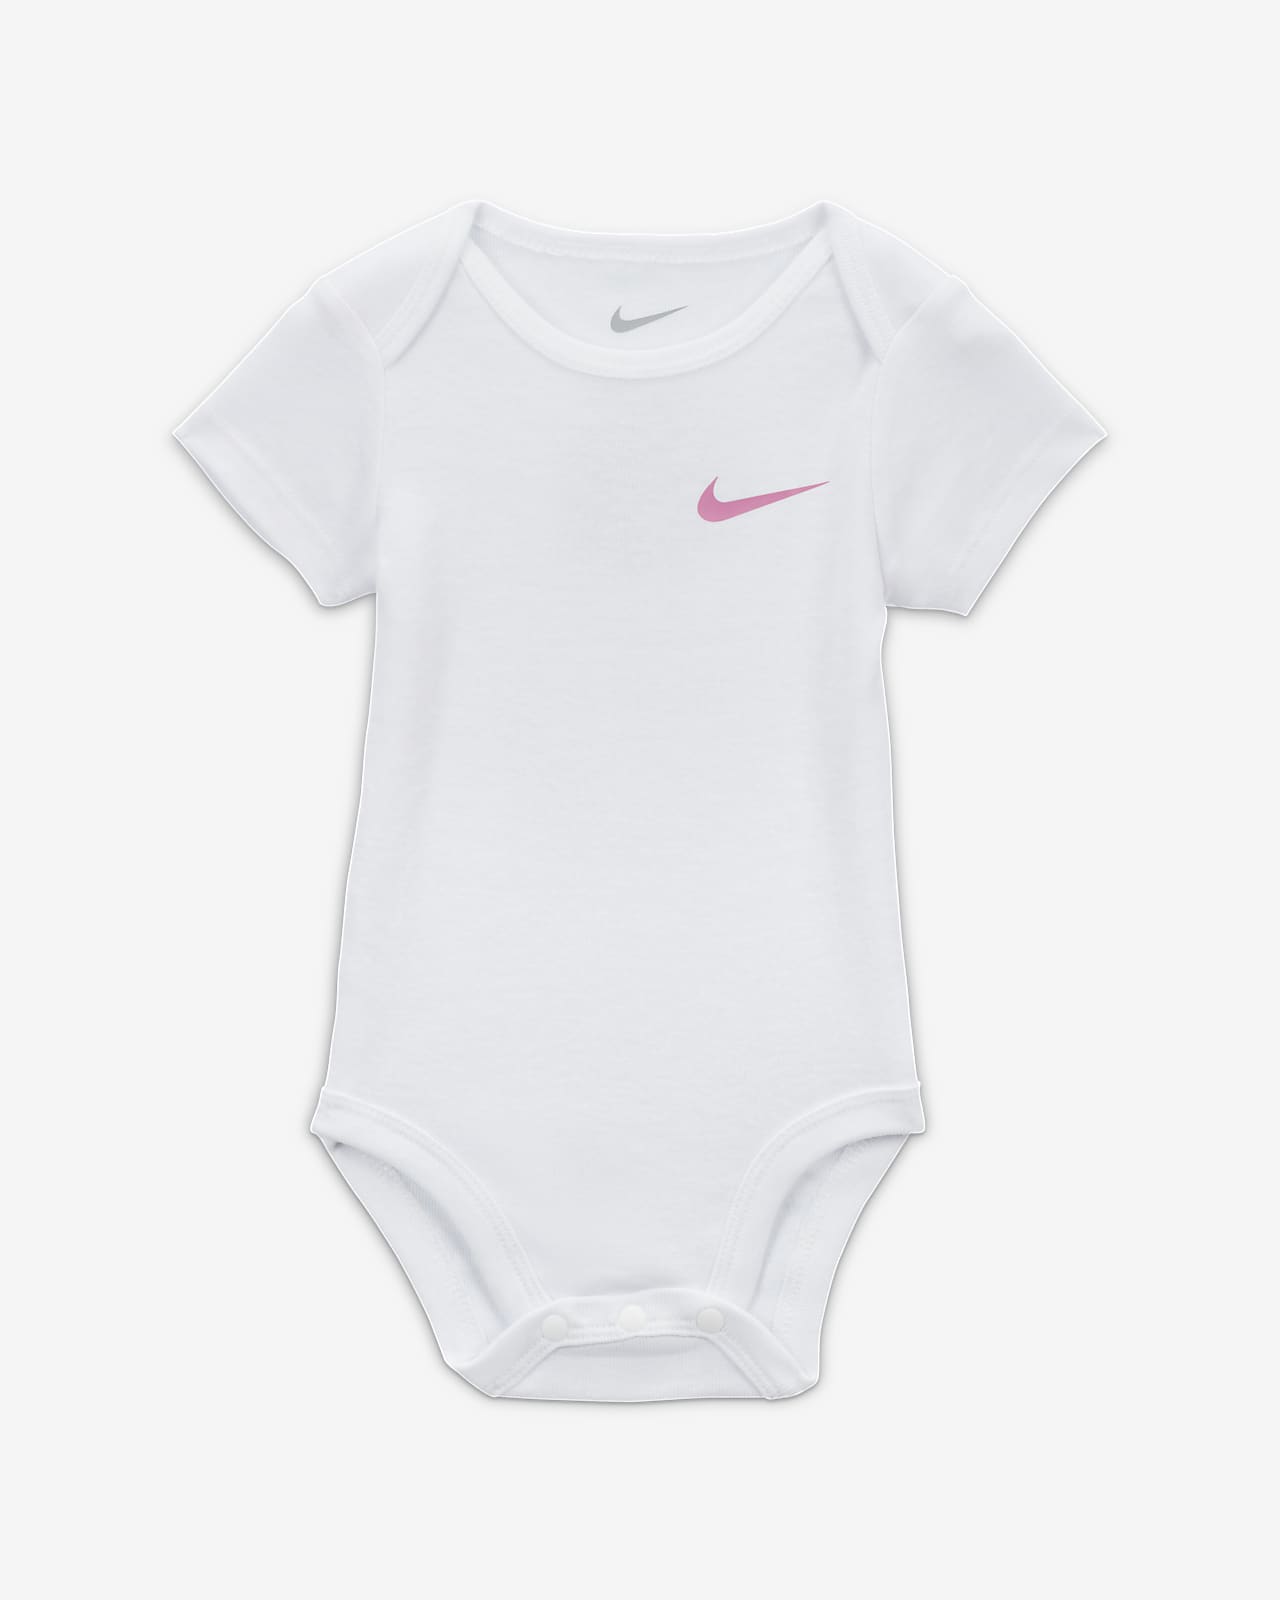 Nike Essentials 3-Piece Pants Set Baby 3-Piece Set